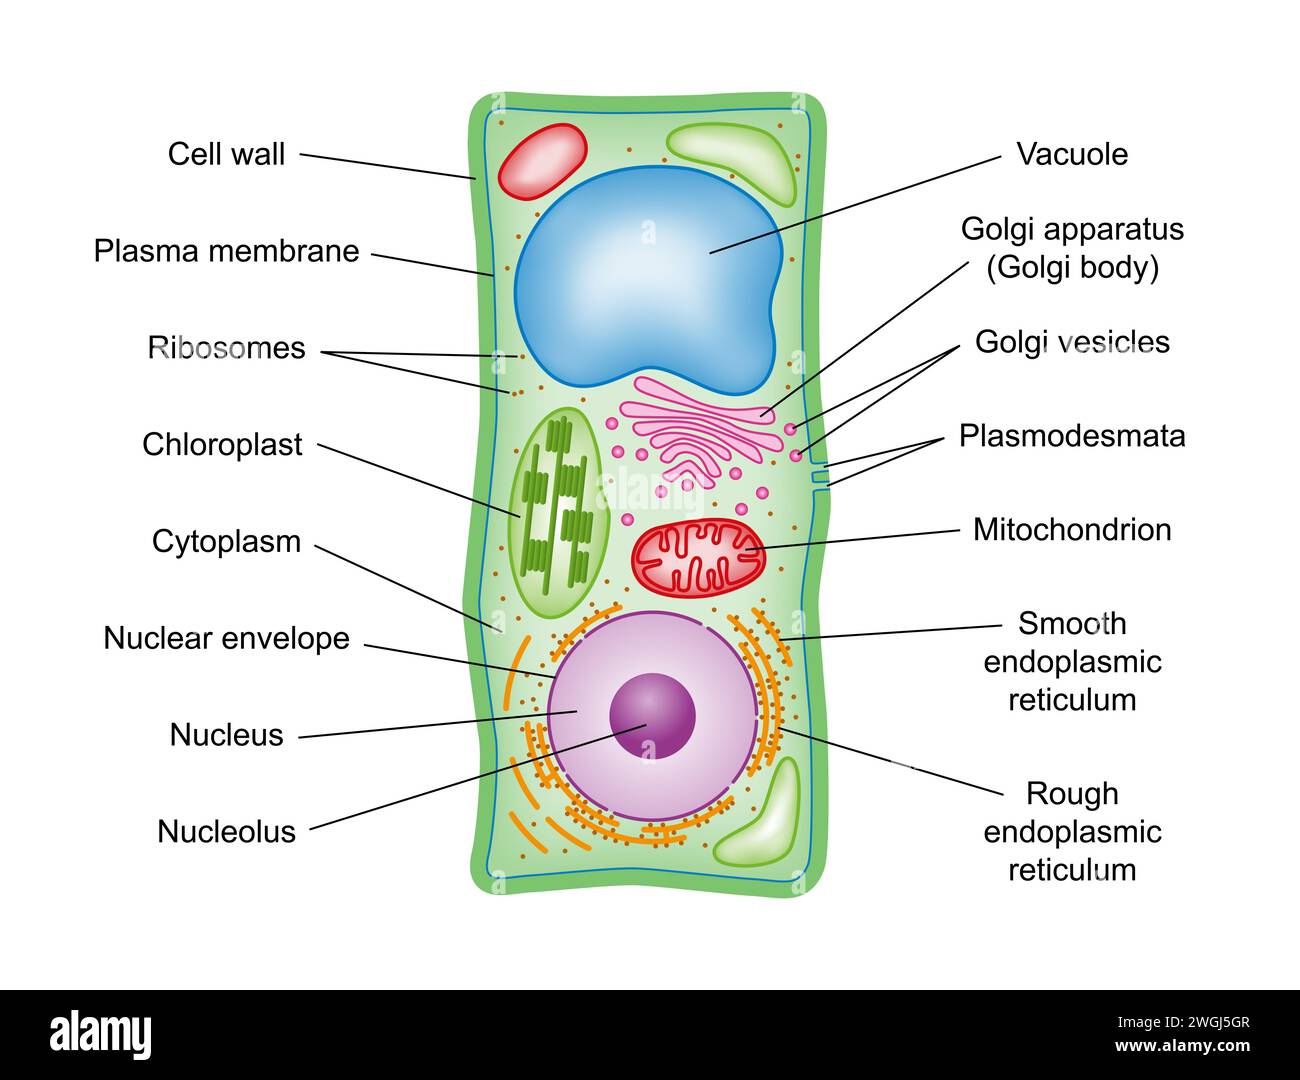 Structure cellulaire végétale, coupe transversale, avec légende. Schéma schématique des composants des cellules végétales, eucaryotes photosynthétiques, avec des termes techniques . Banque D'Images